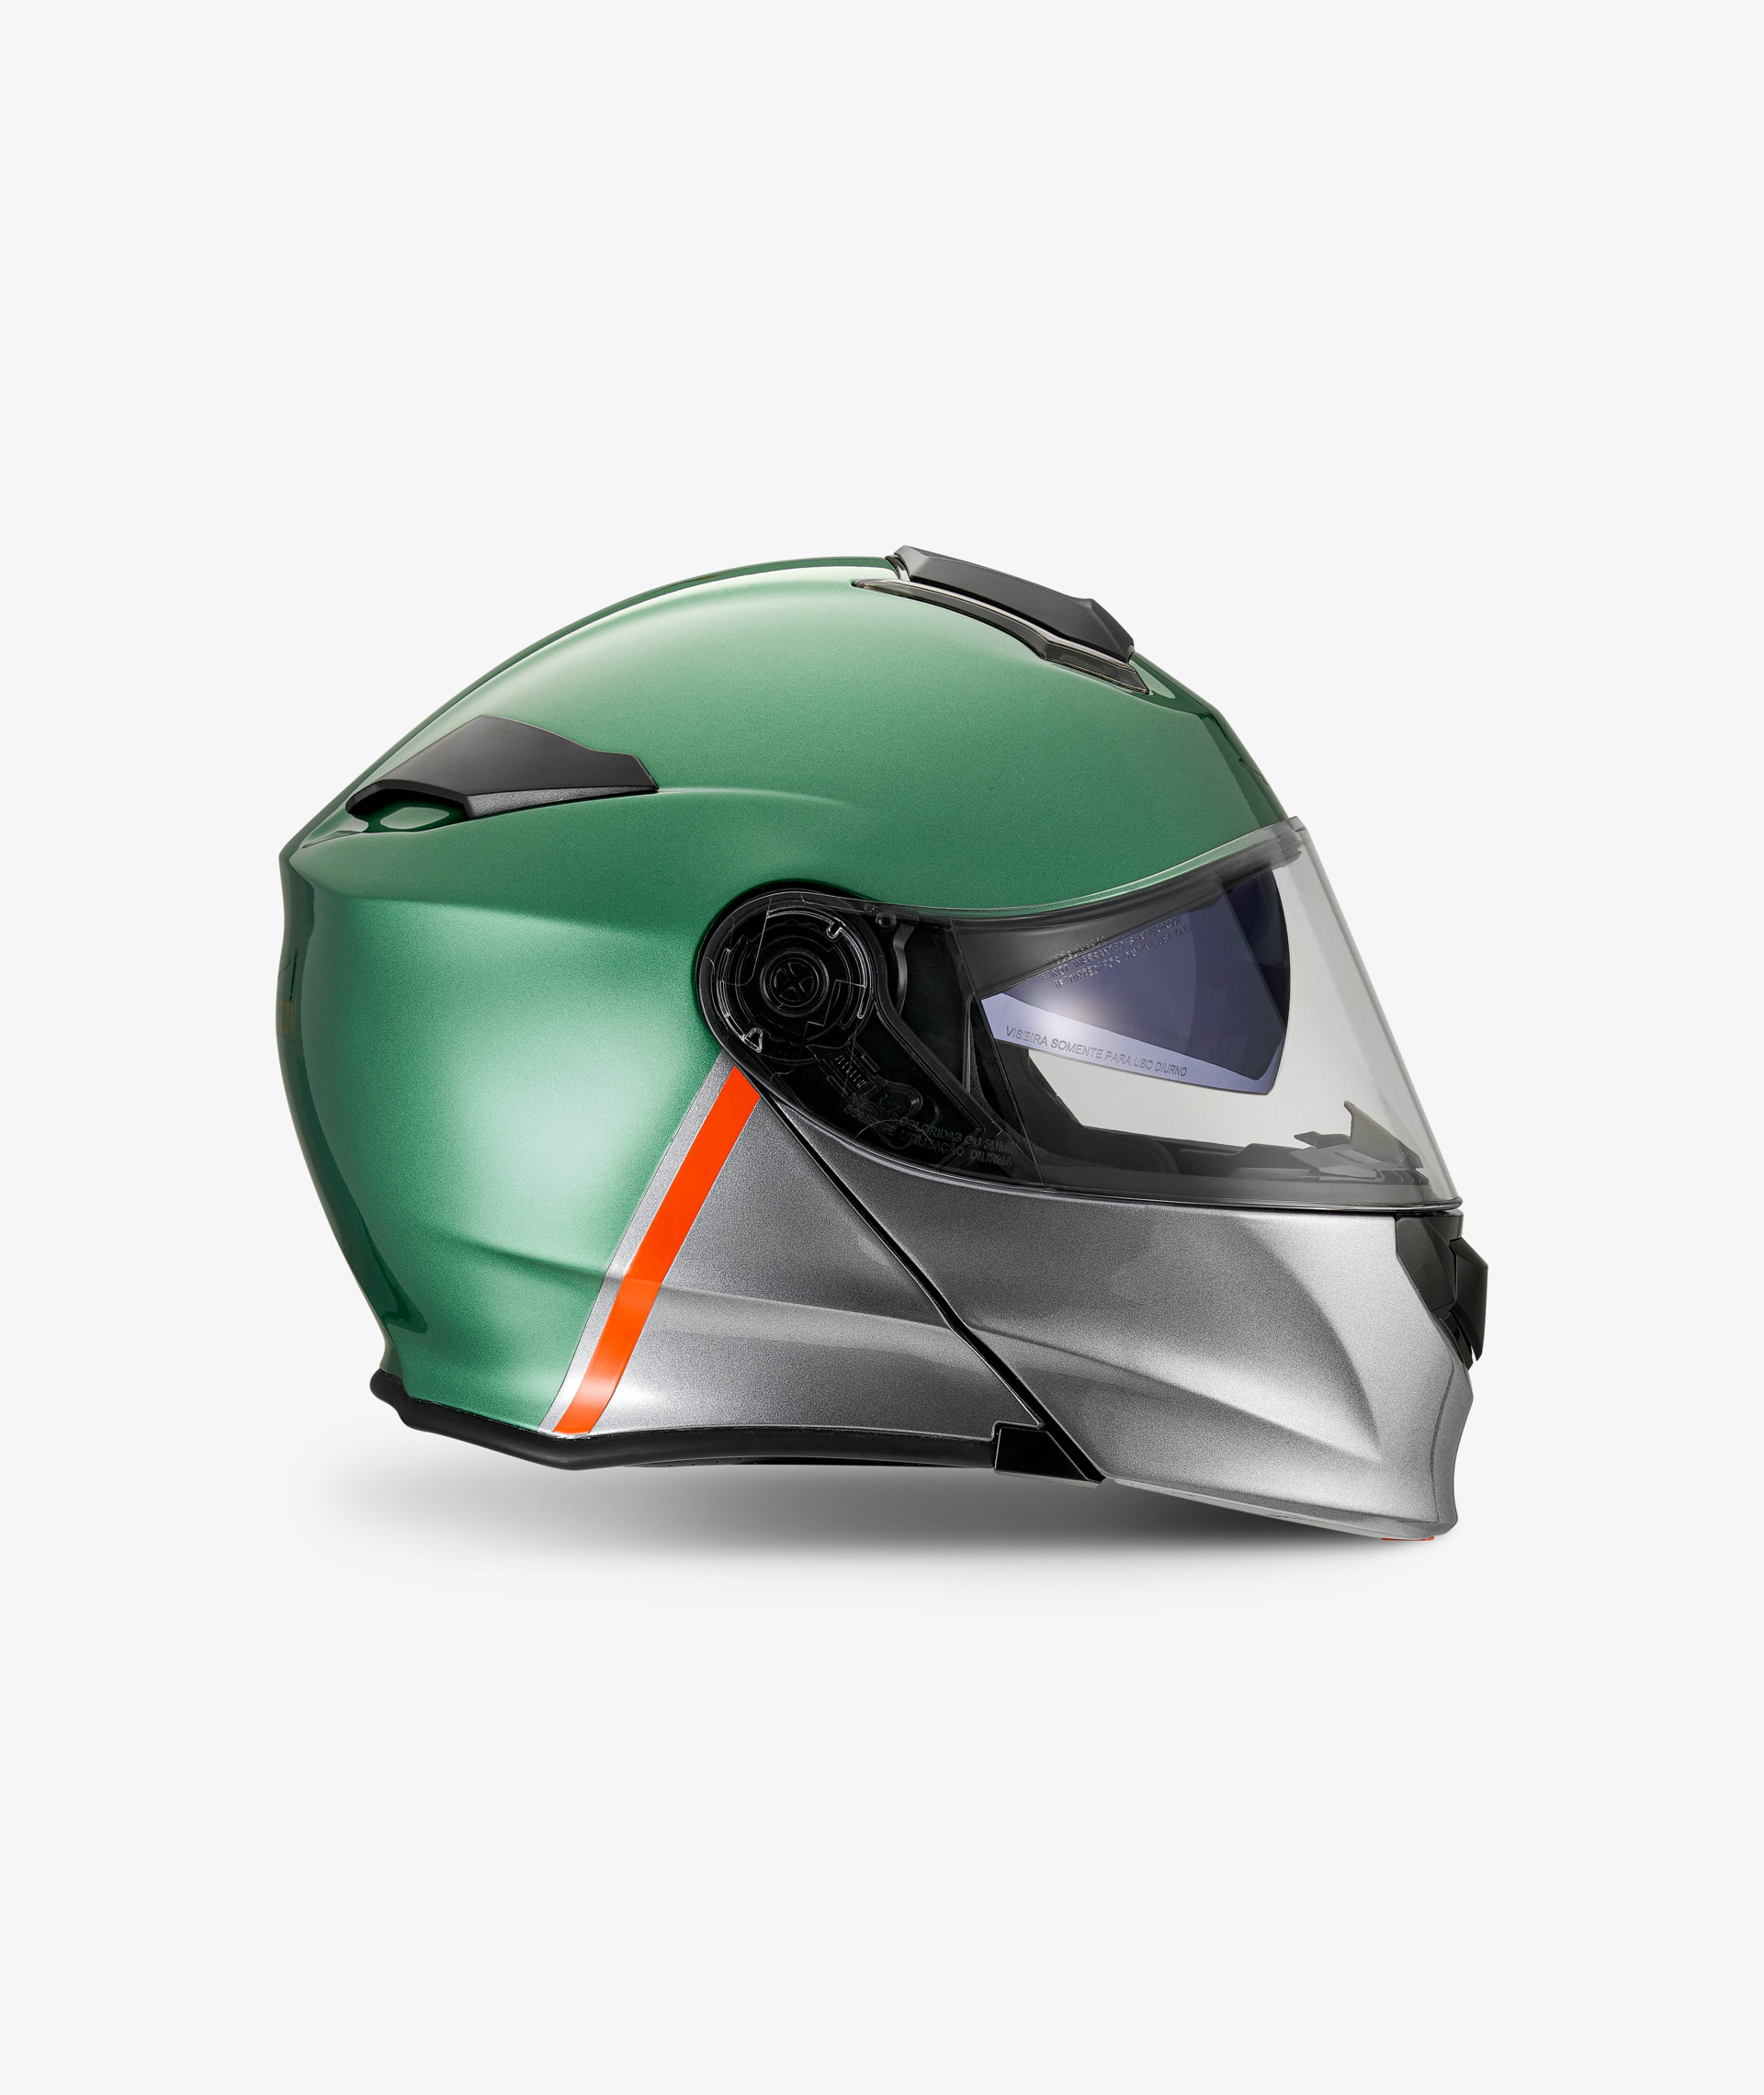 Acquista XTGP523 Helmet Per Casco Motociclistico Integrato Porta